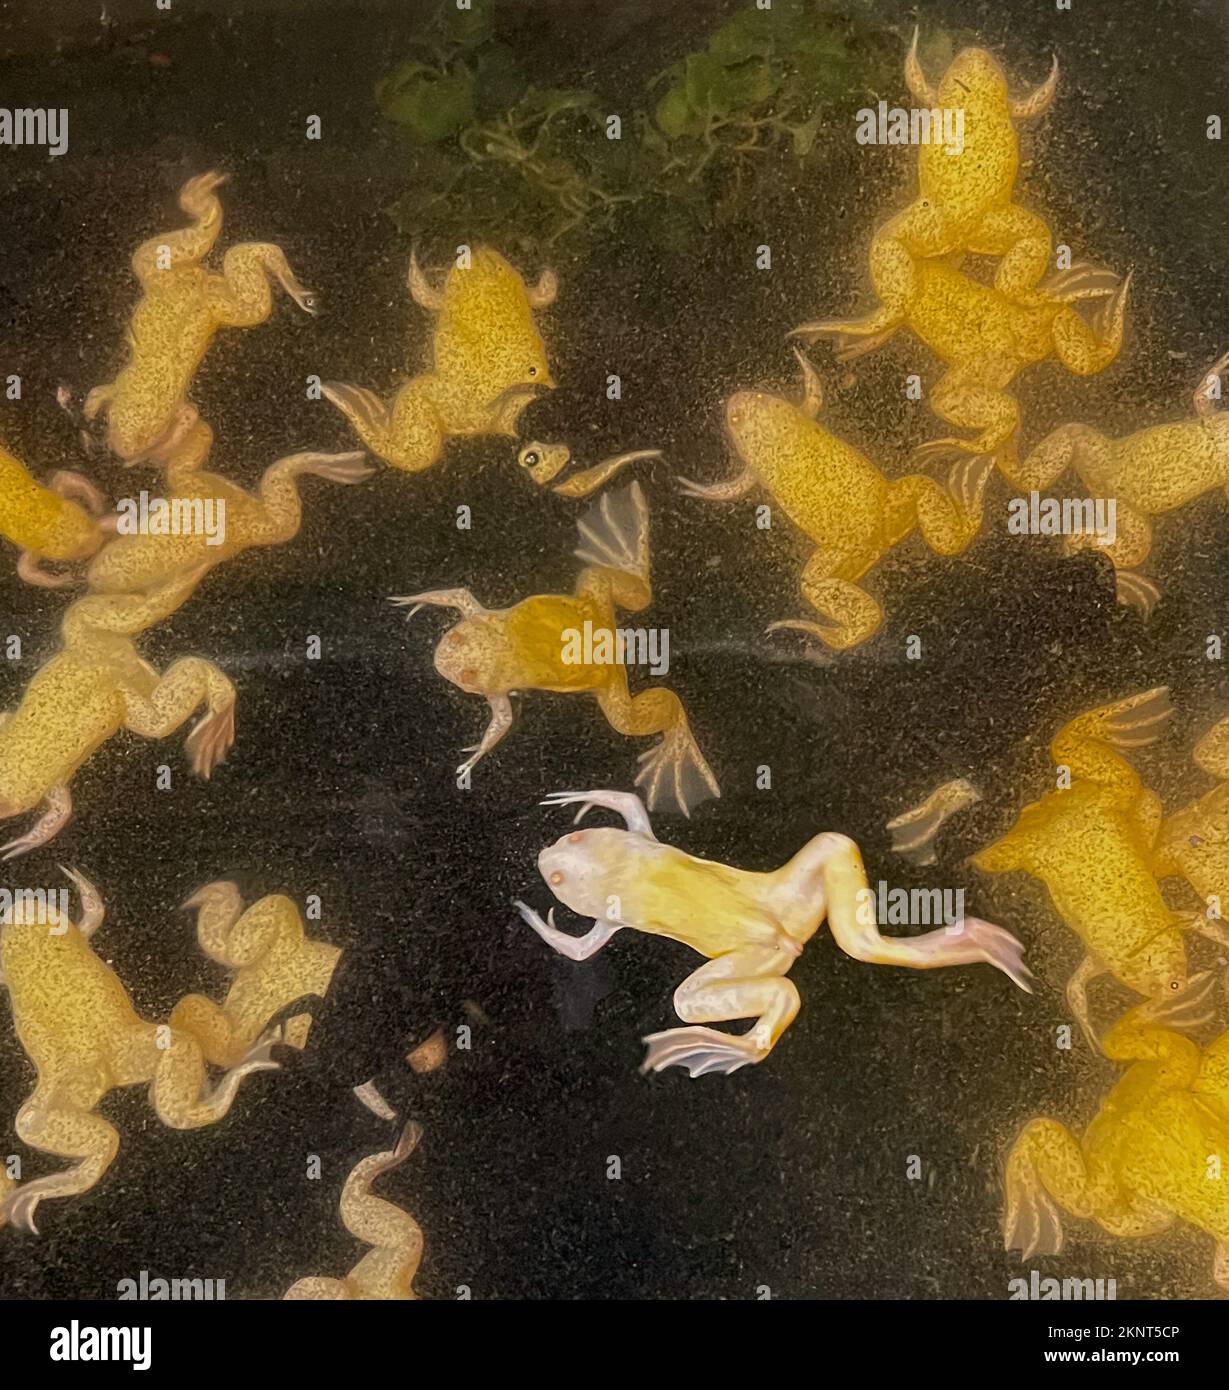 Vea ranas amarillas, anfibios, mostrados en el gran tanque de agua donde se crían para la ciencia y la afición. Usted puede ver sus pies webbed. Foto de stock